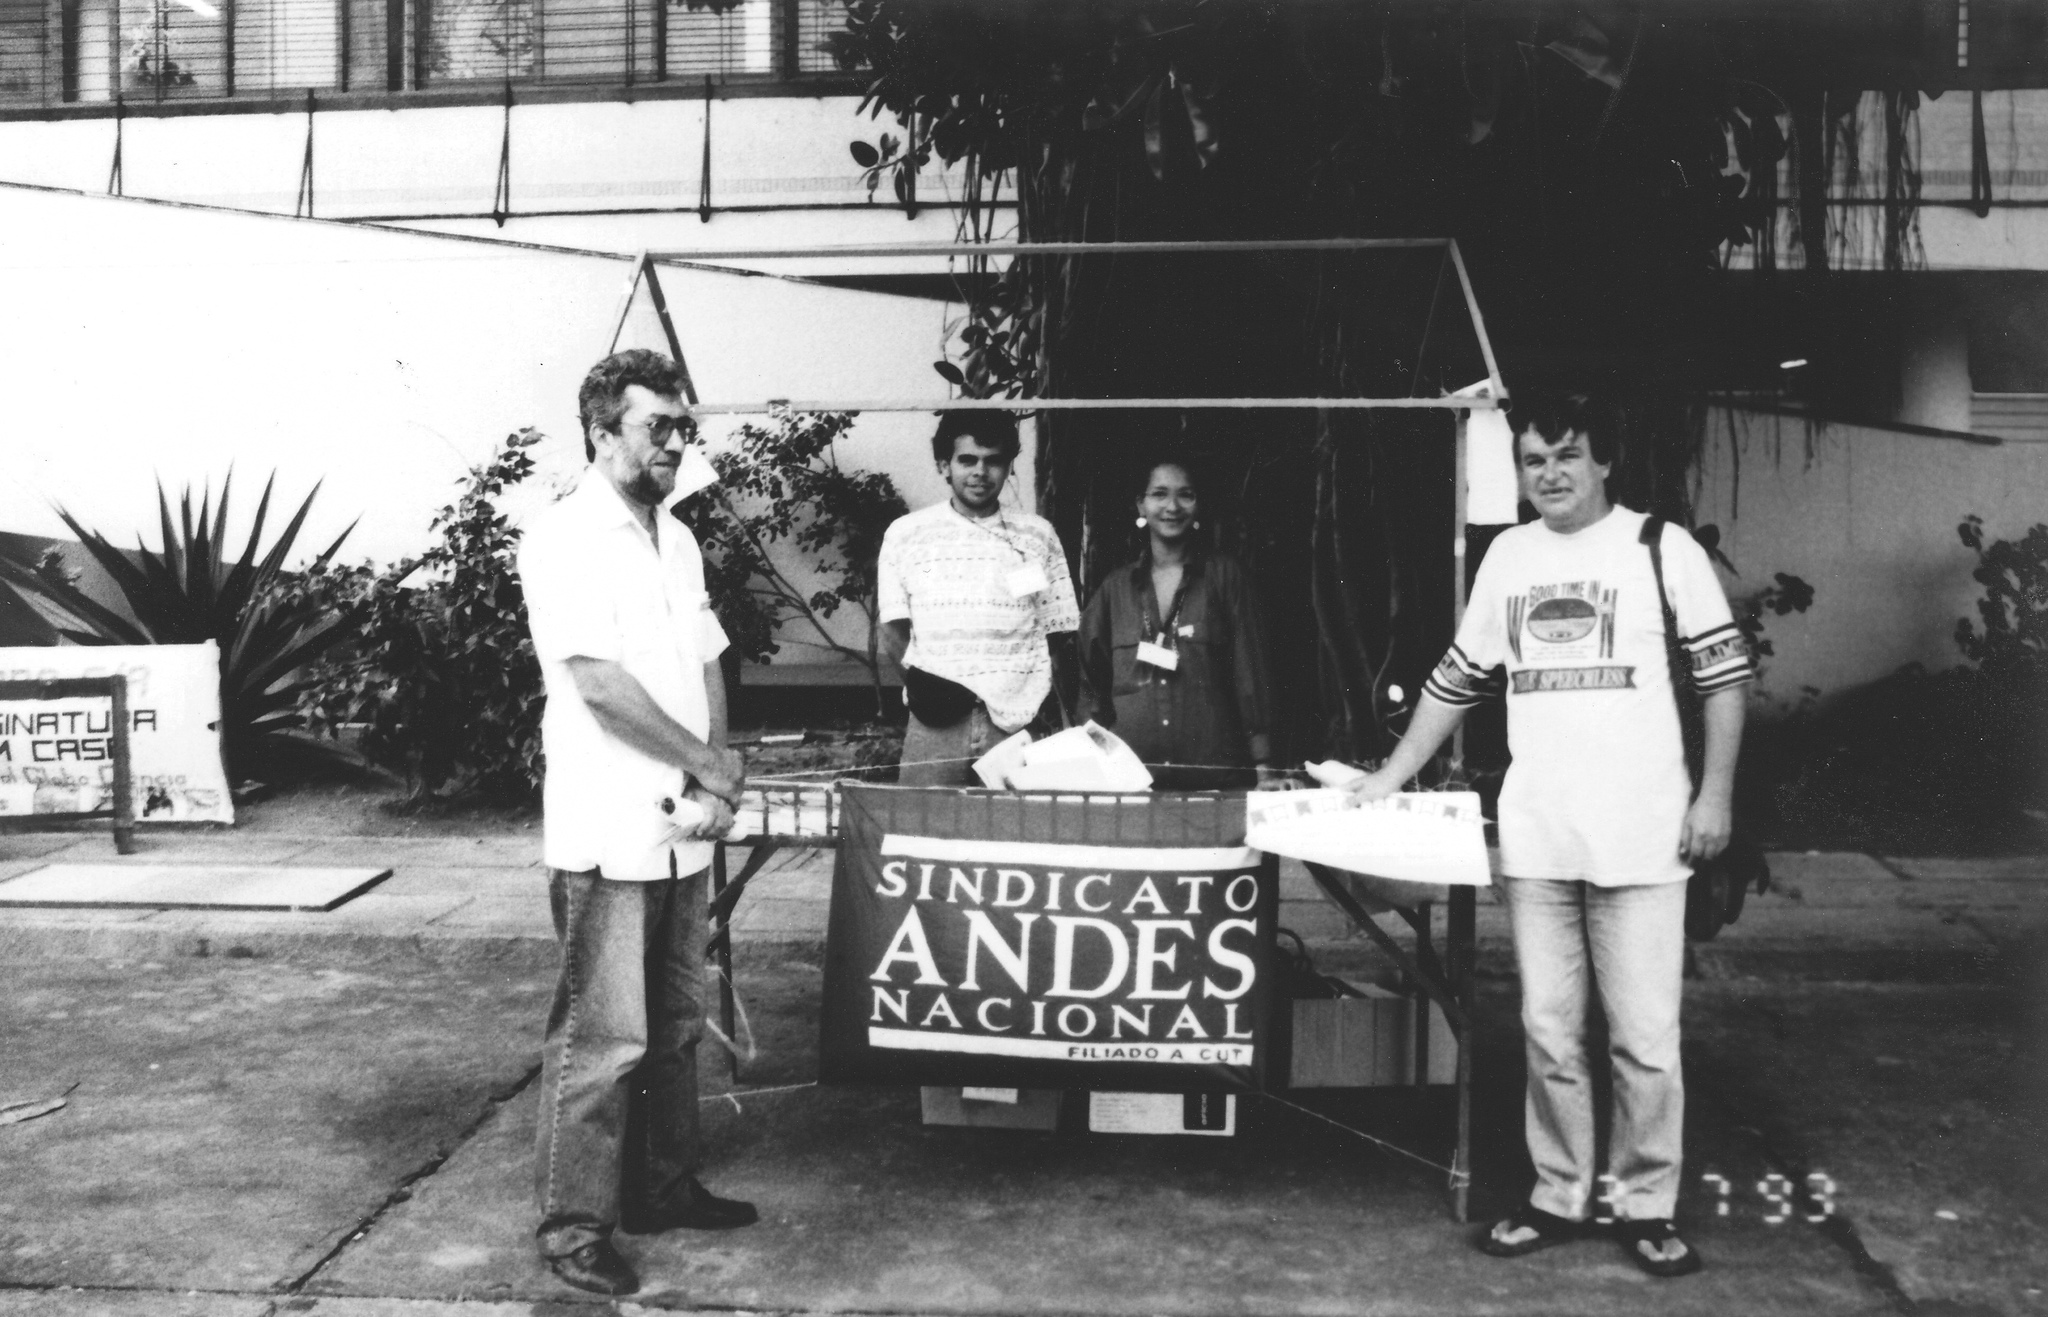 ANDES-SN na Sociedade Brasileira para o Progresso da Ciência (SBPC) em 1993 em Recife -PE. Fotógrafo Hideo.